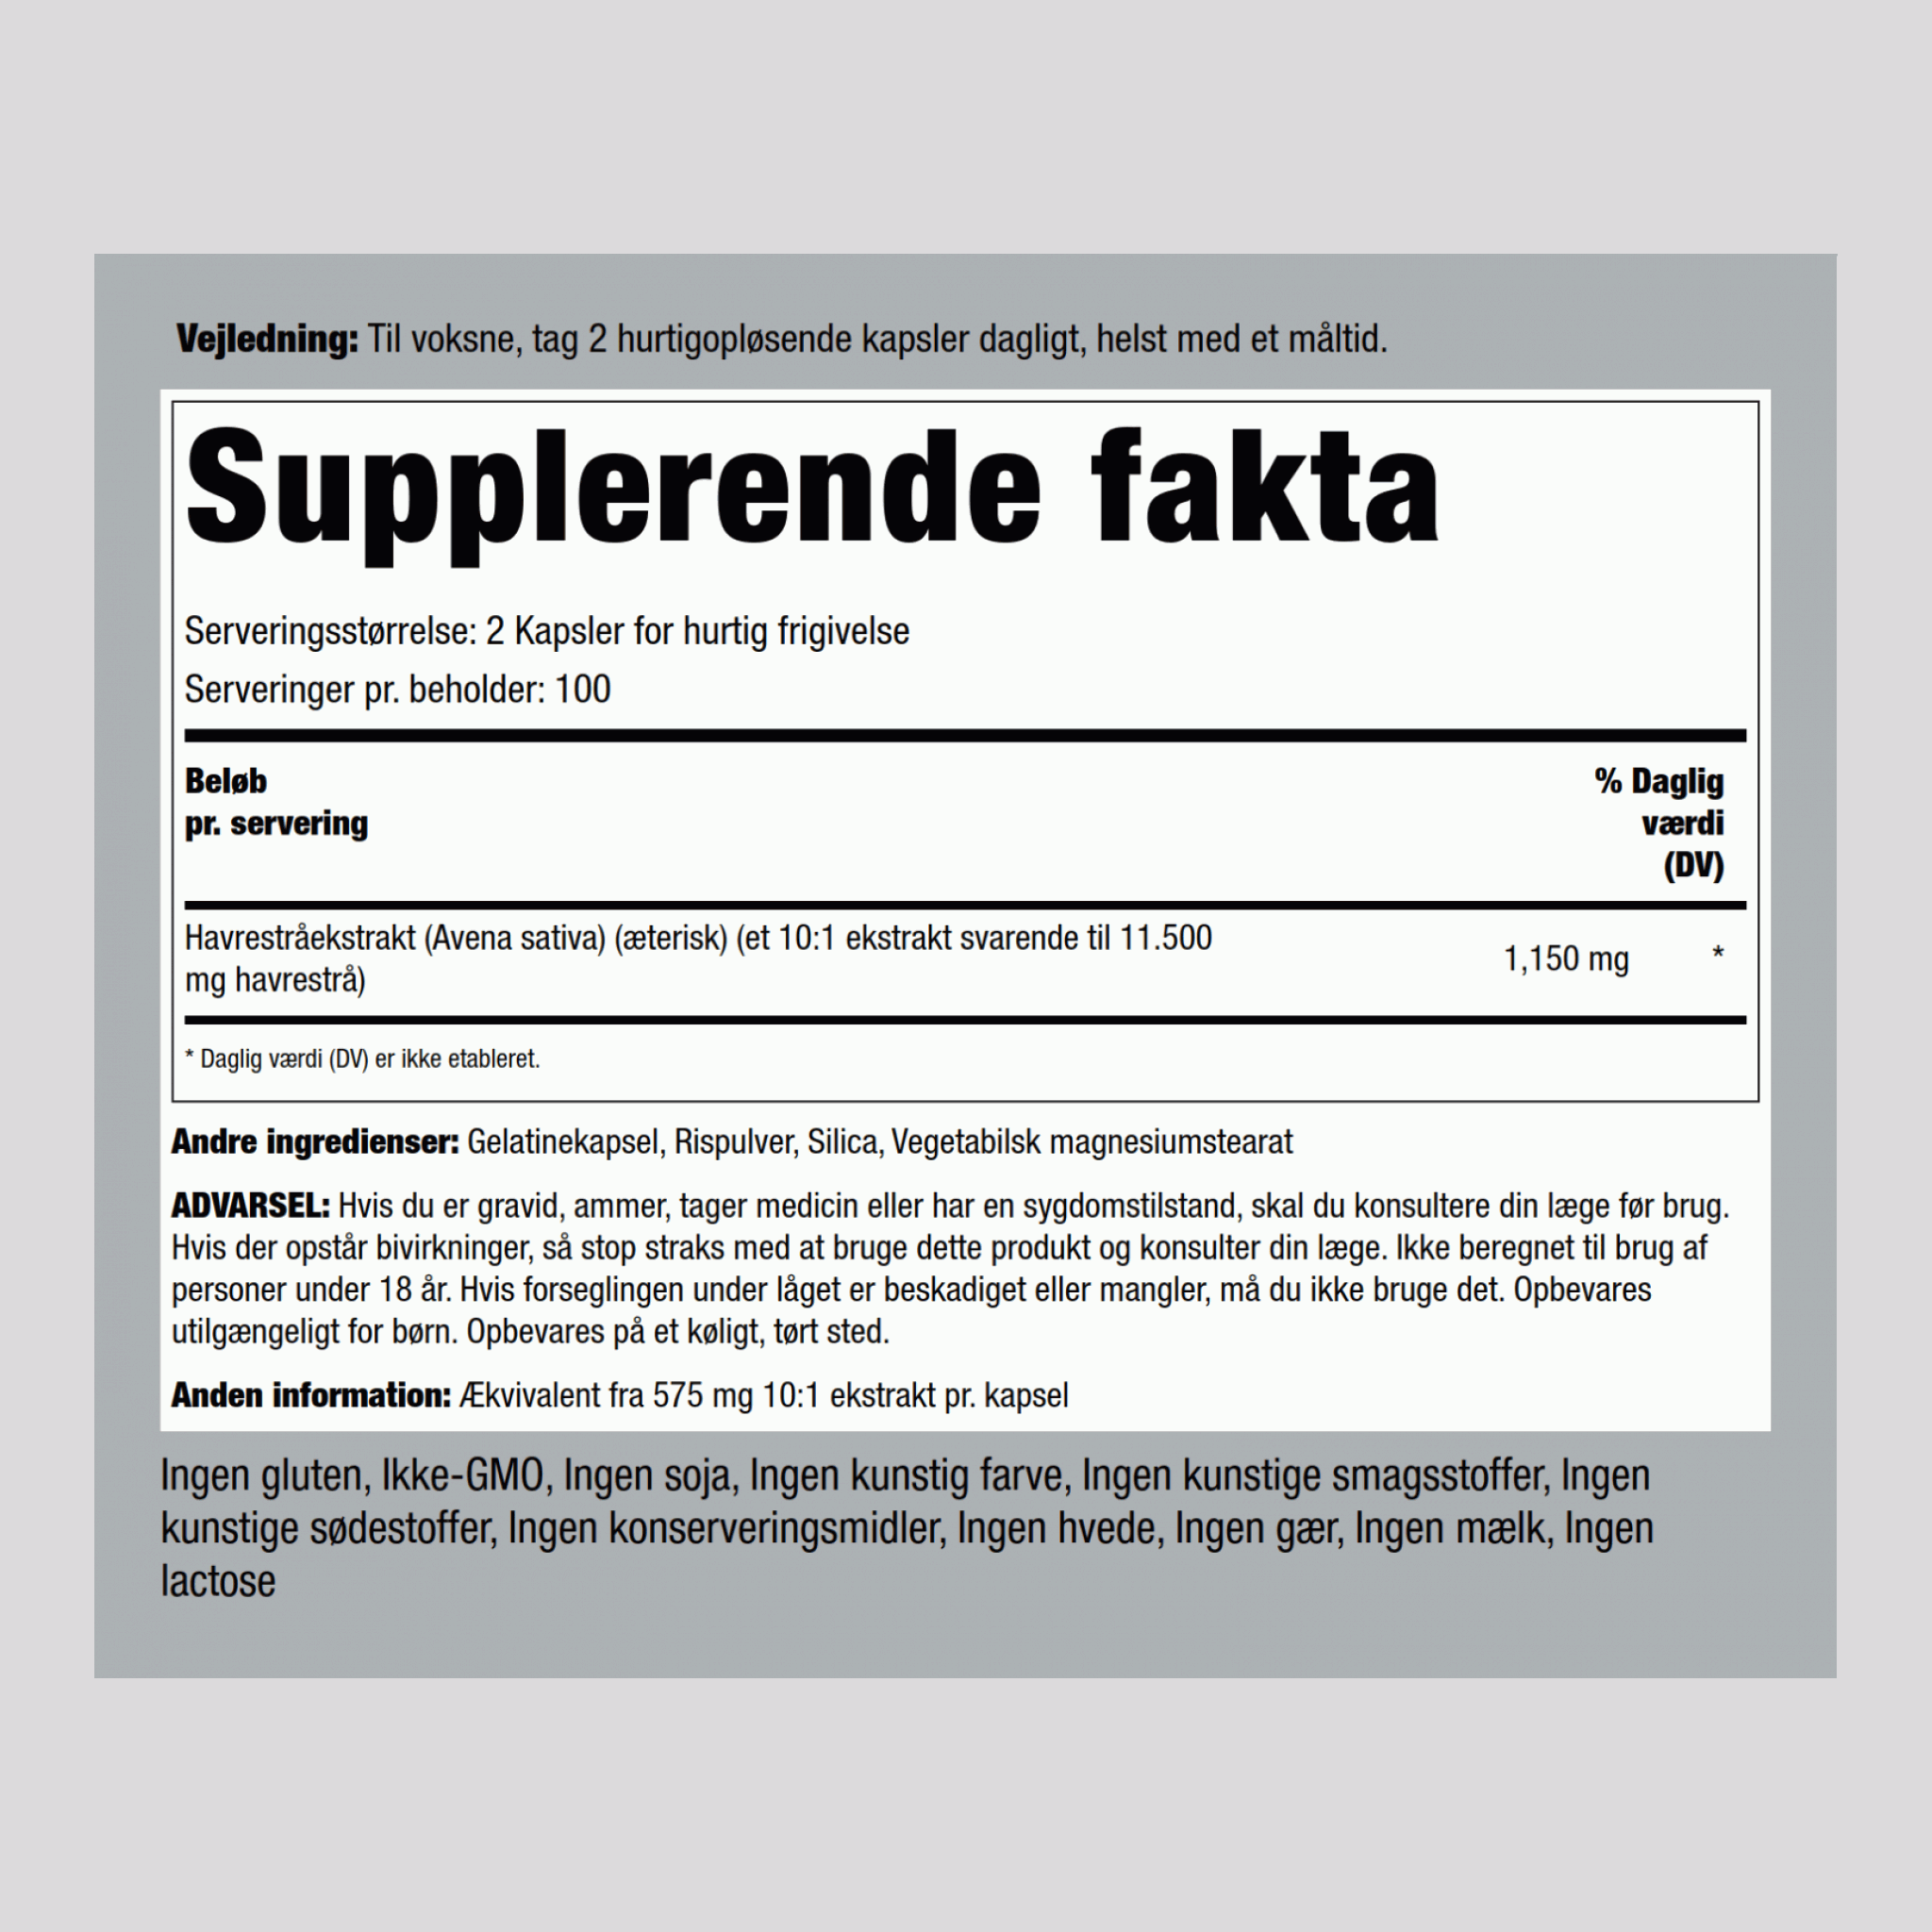 Avena Sativa - Mandlig udholdenhed og superstyrke 1150 mg (pr. dosering) 200 Kapsler for hurtig frigivelse     